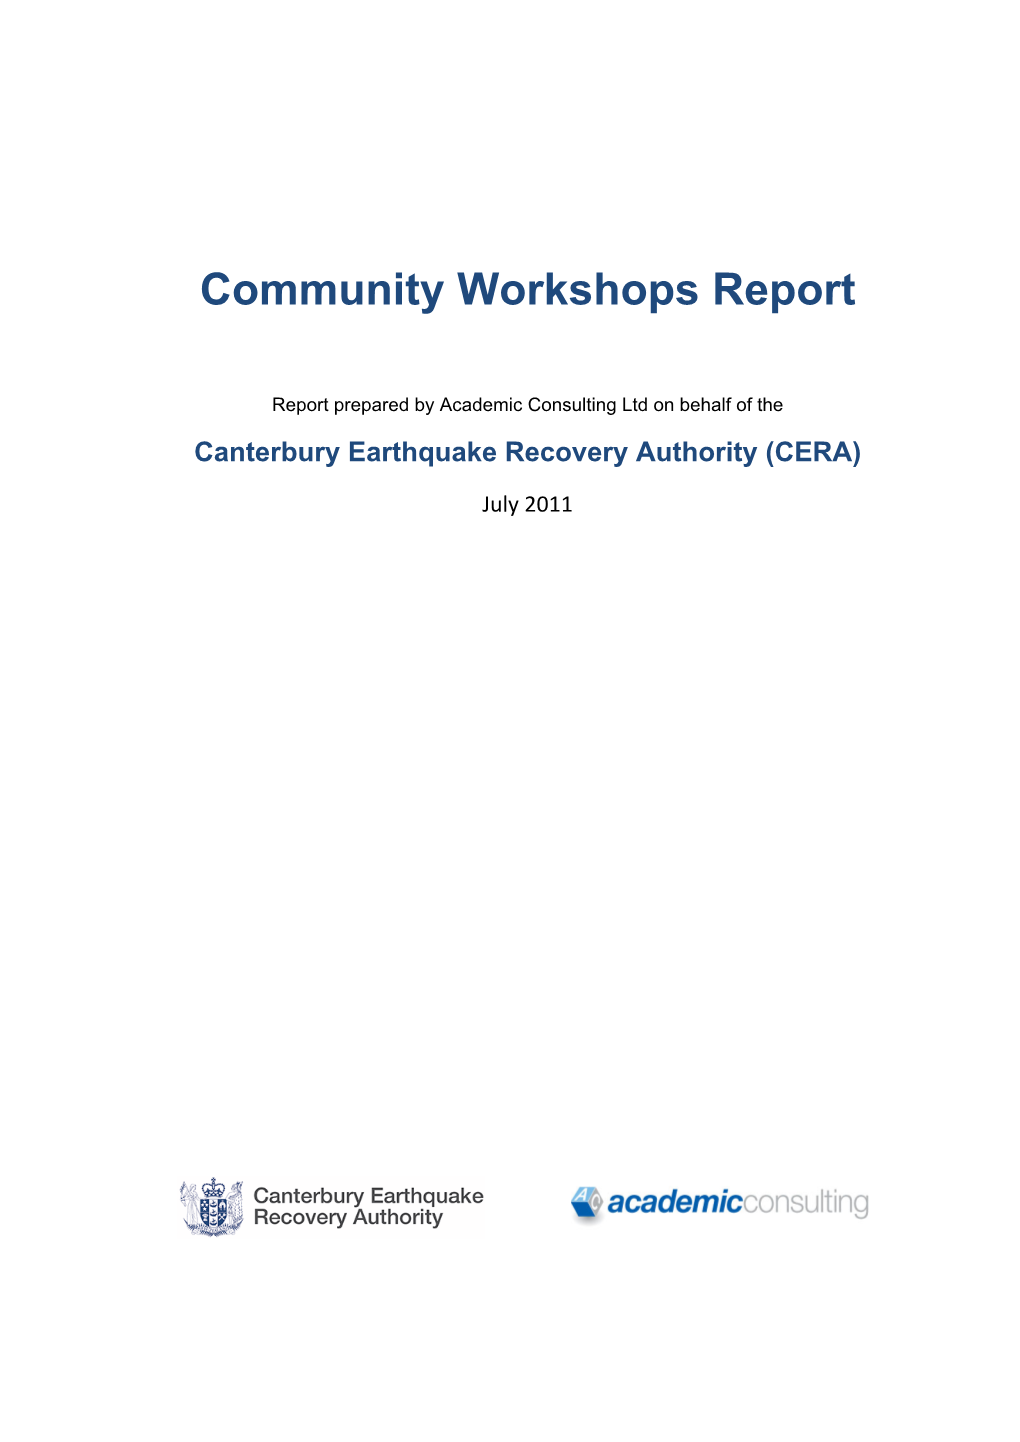 File (Cera-Community-Workshops-Report